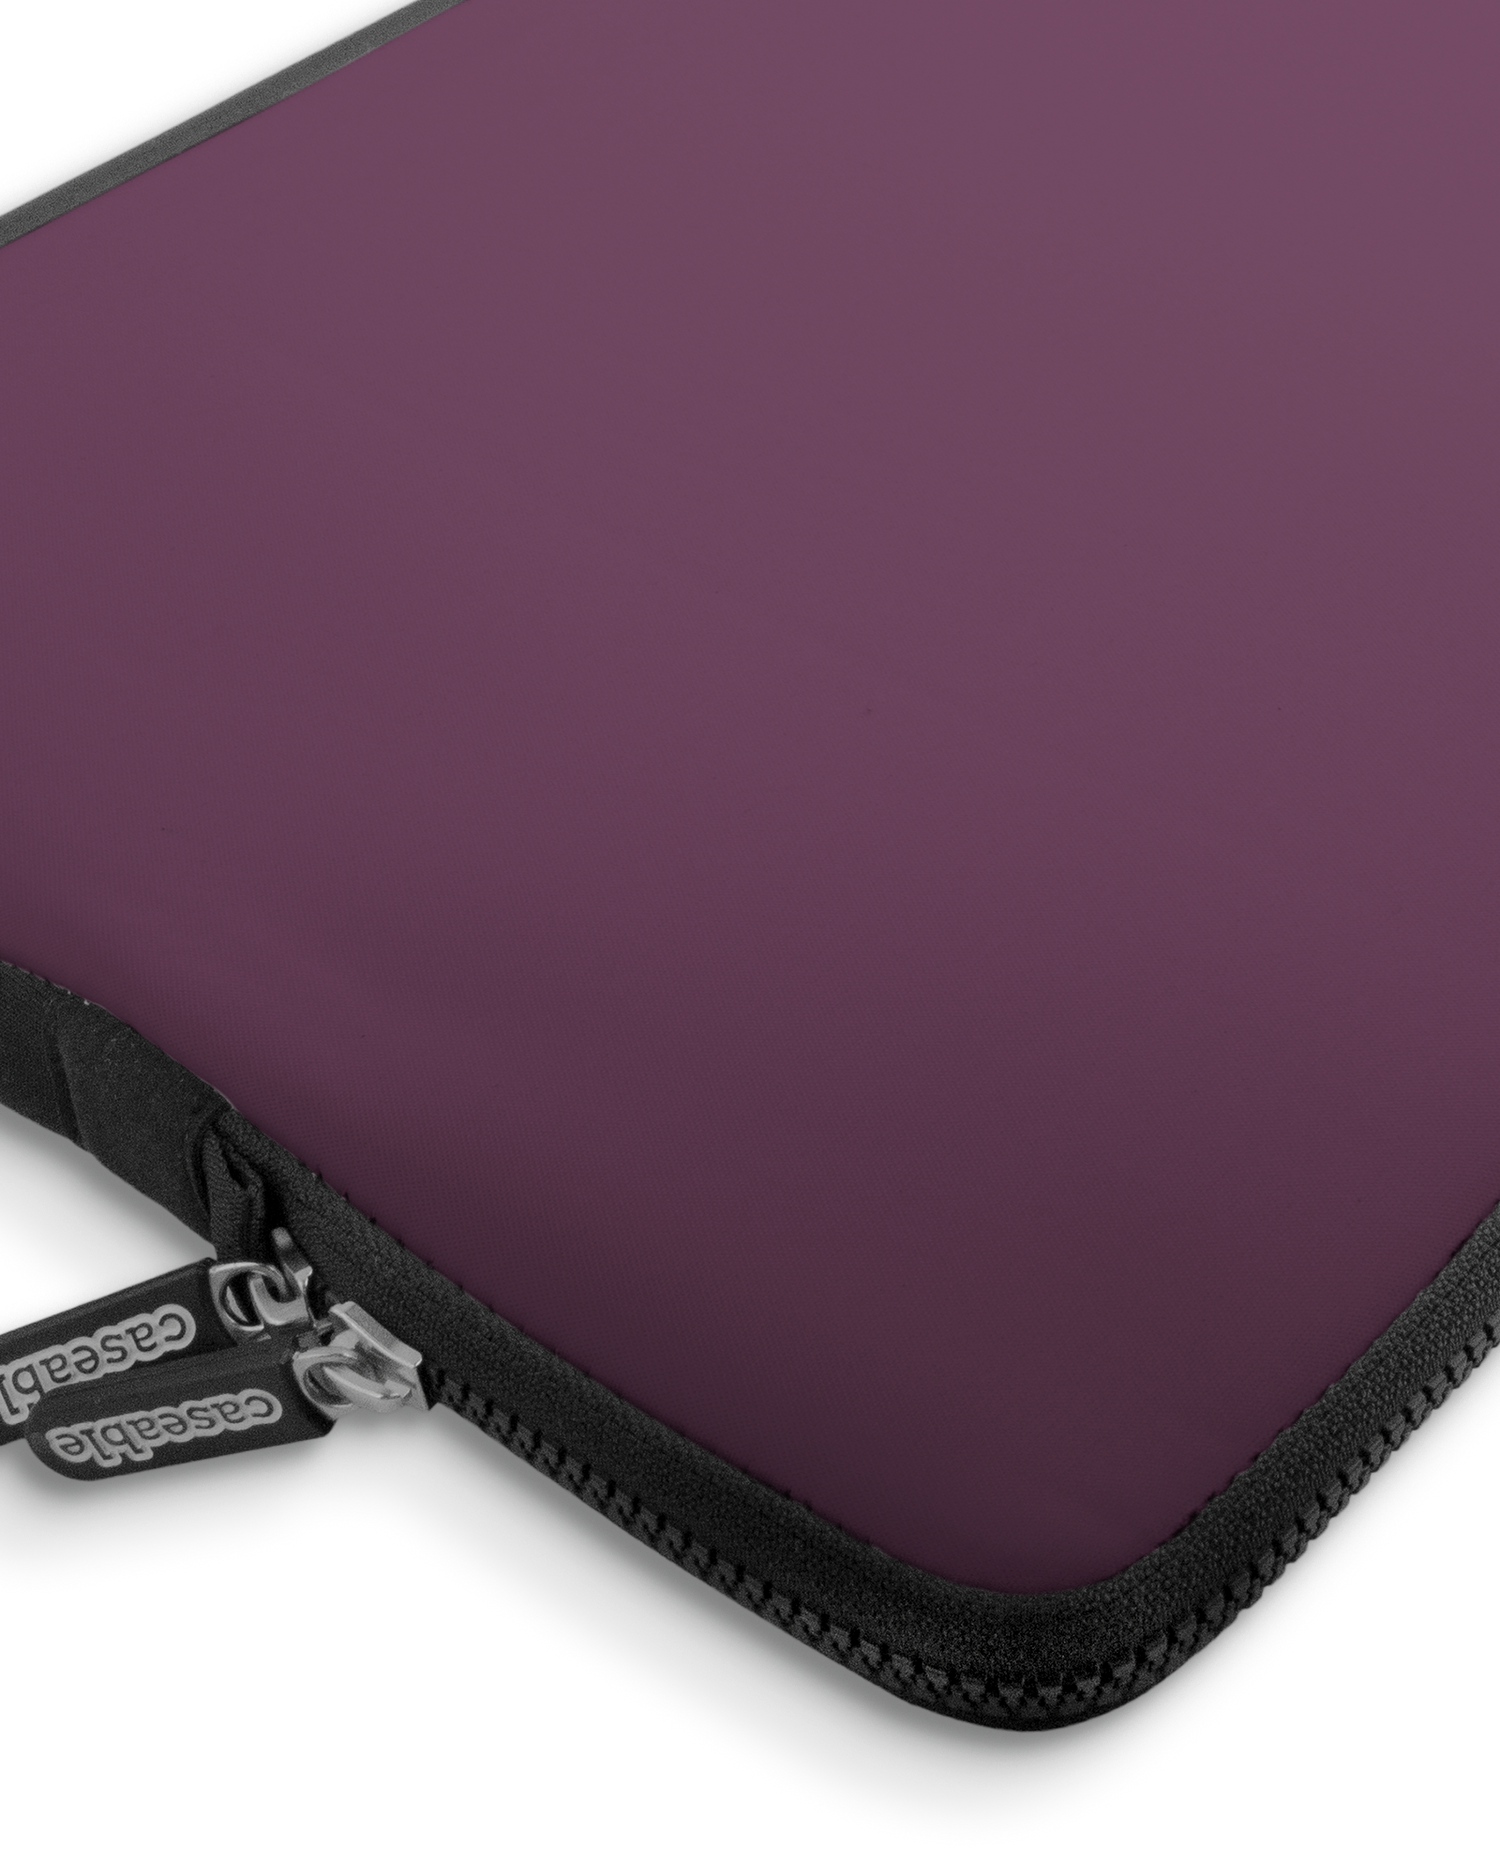 PLUM Premium Laptoptasche 17 Zoll mit Gerät im Inneren